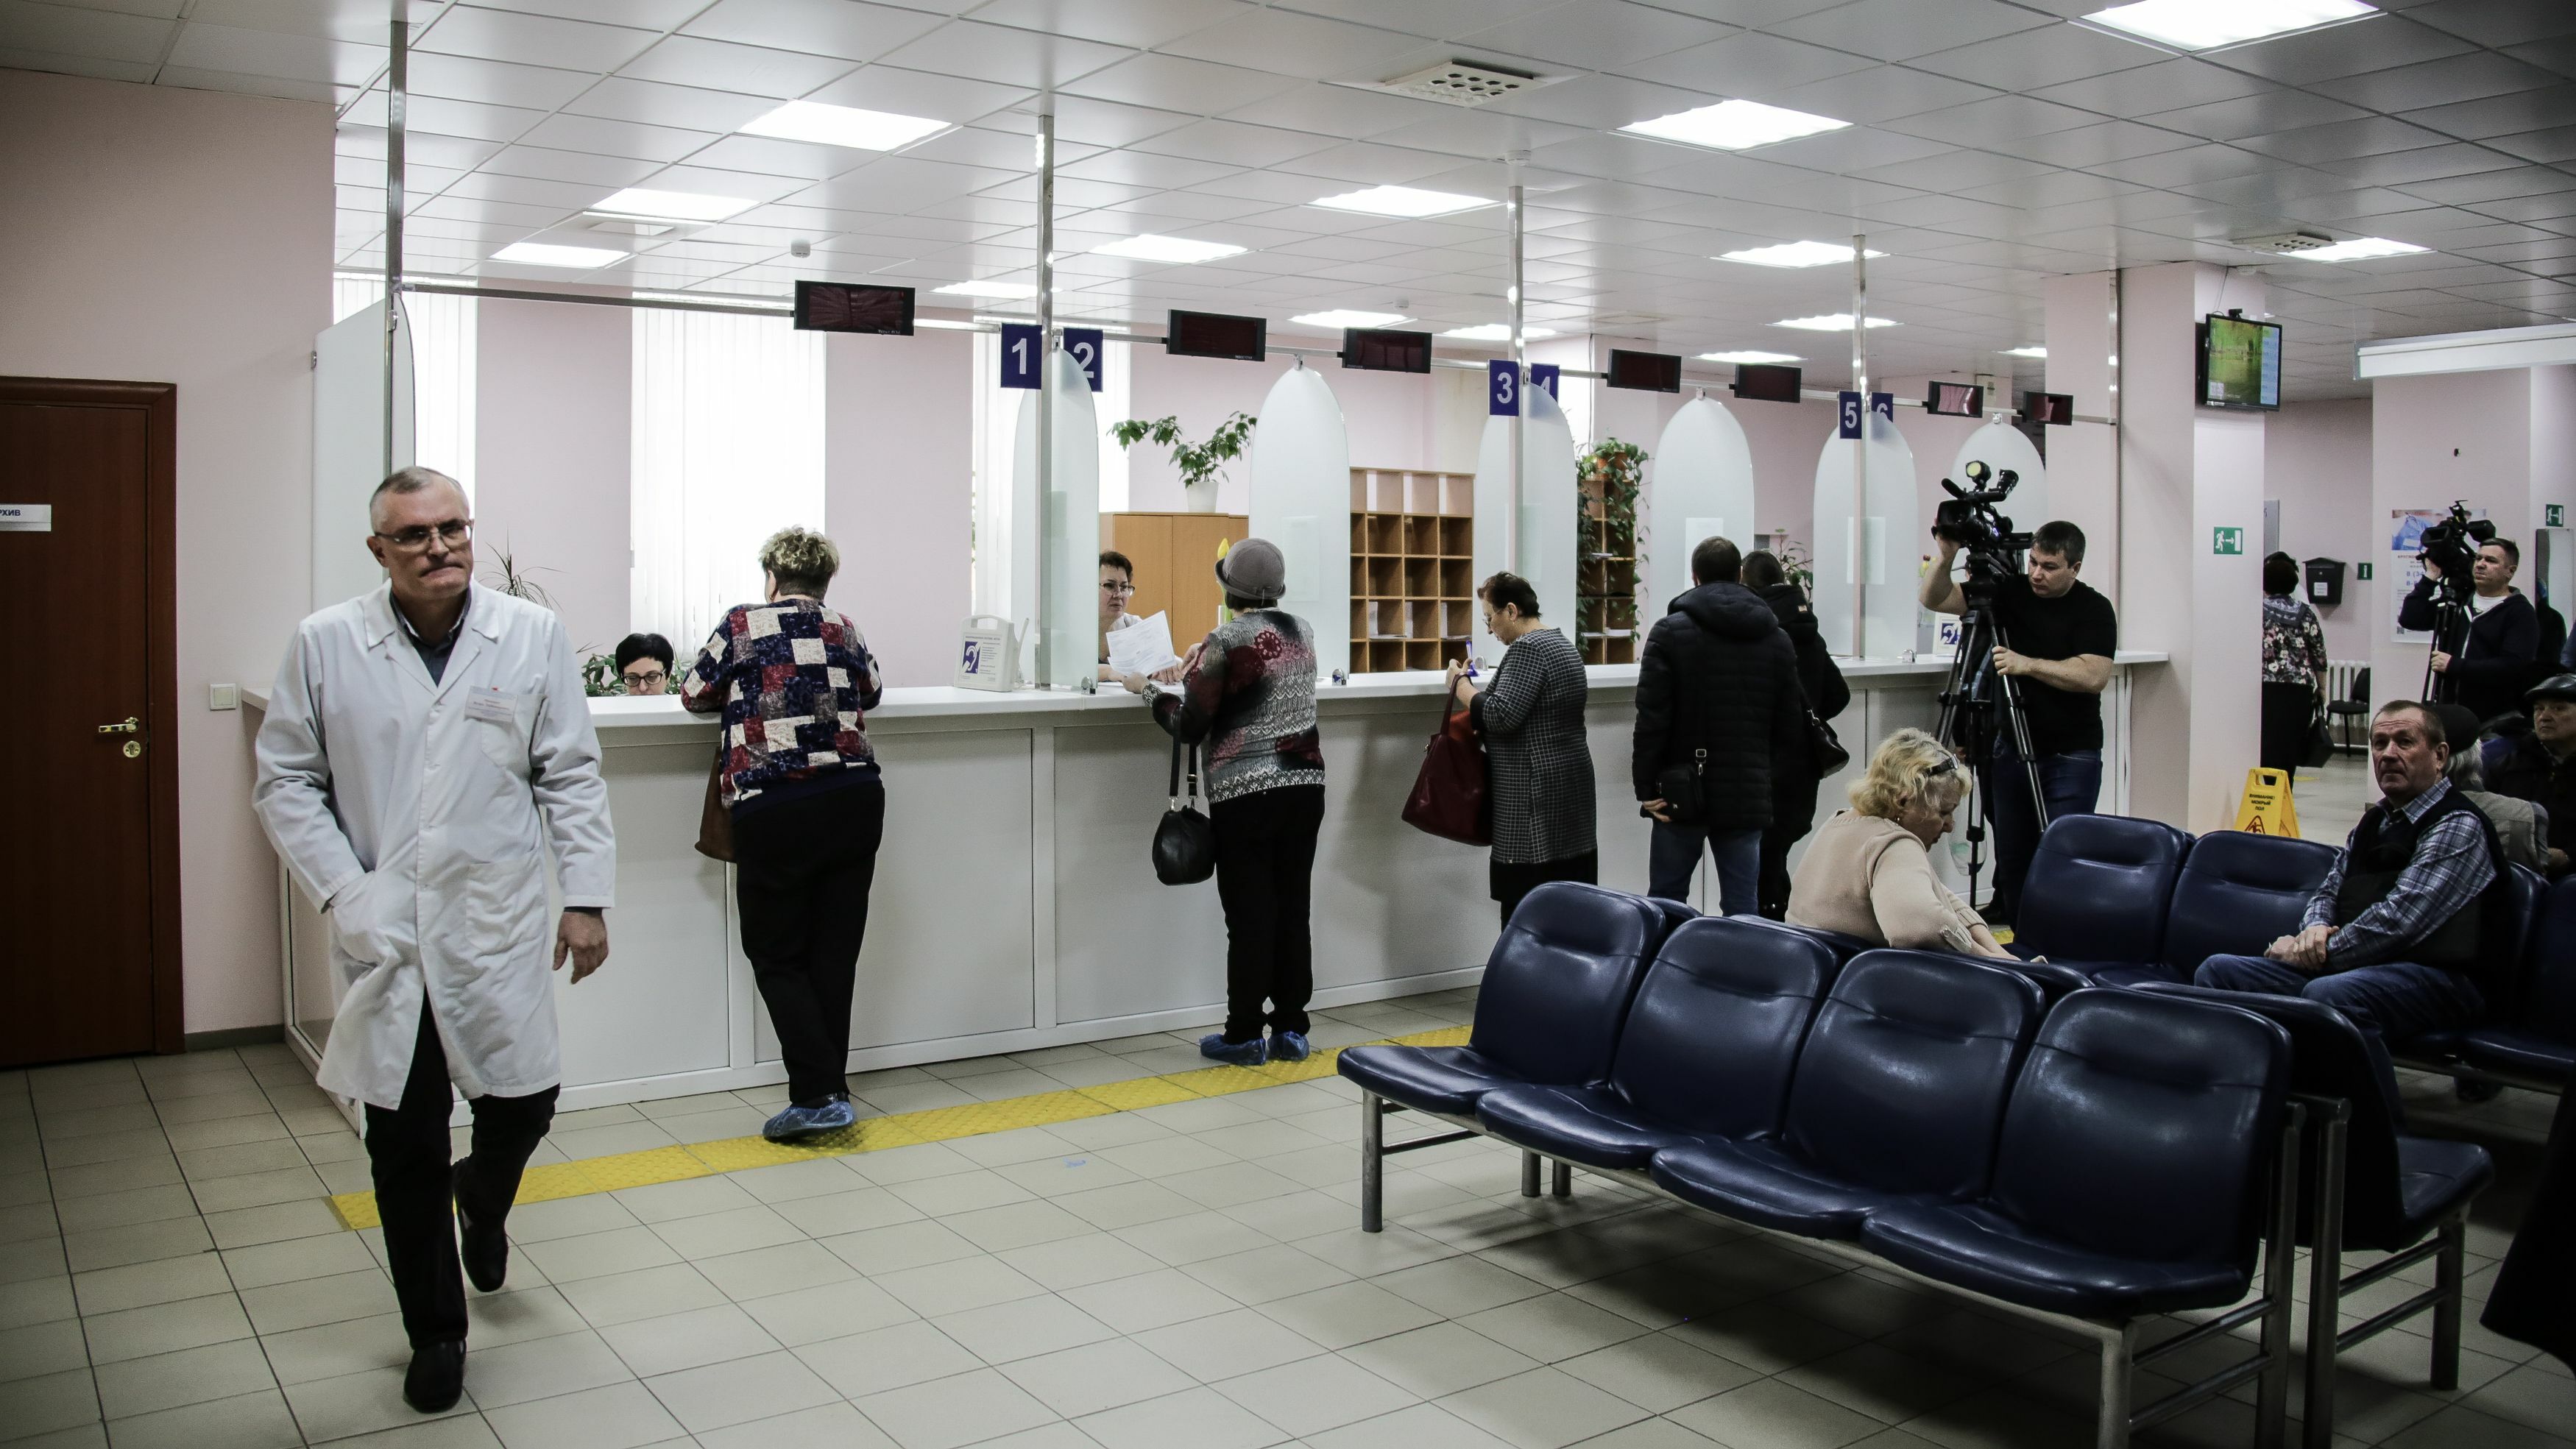 В психбольнице в Хабаровске отказались комментировать ситуацию с бомбой